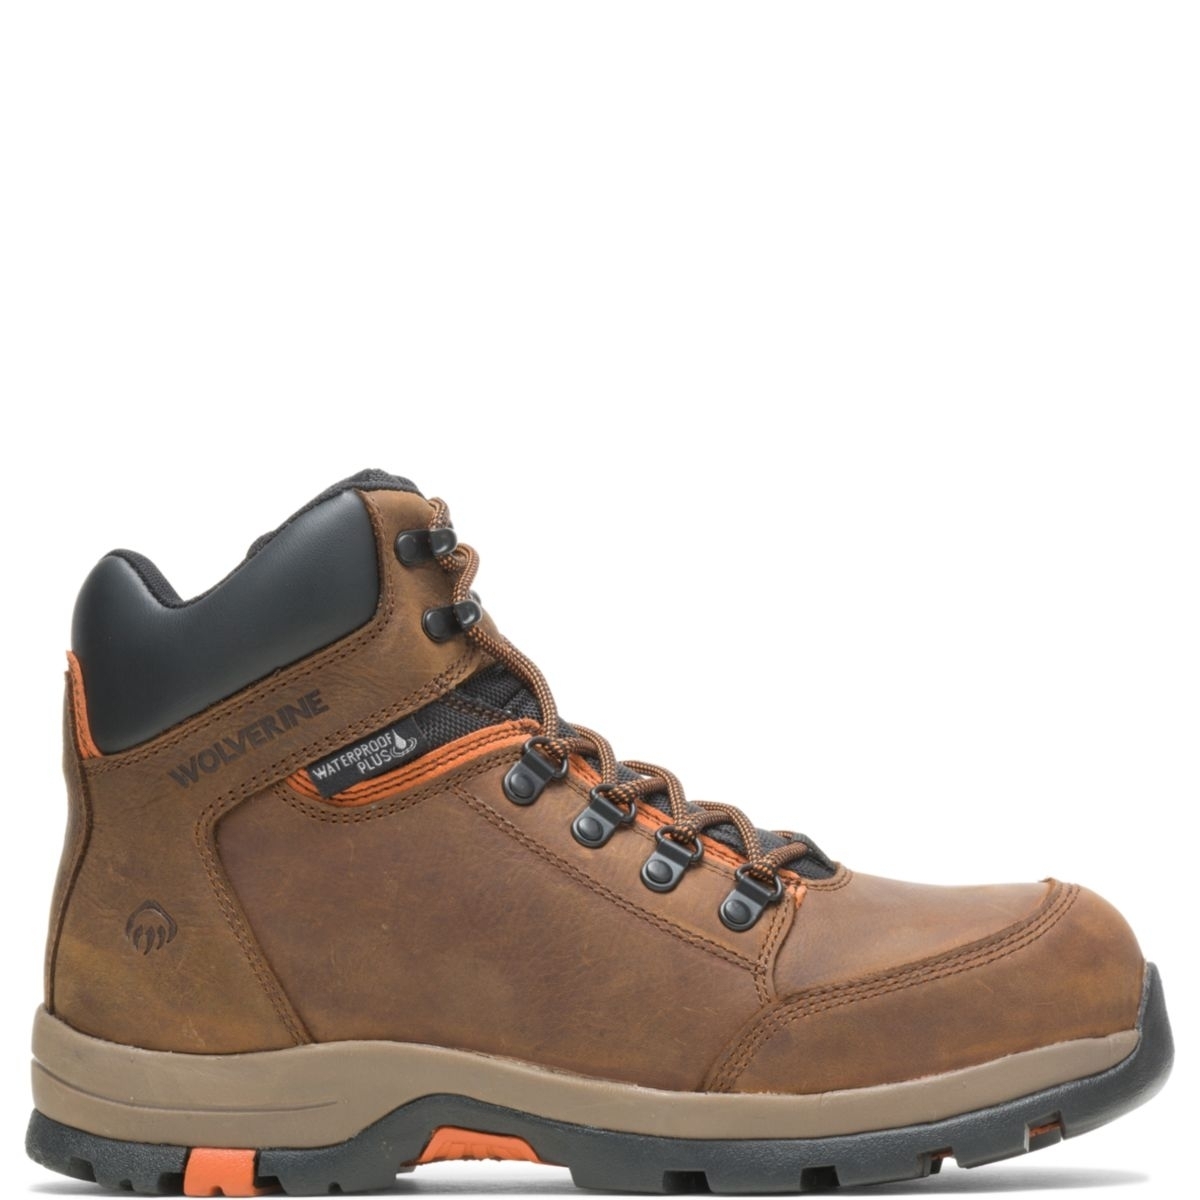 WOLVERINE Men's Grayson Steel Toe Waterproof Work Boot Brown - W211043 BROWN - BROWN, 8.5 X-Wide